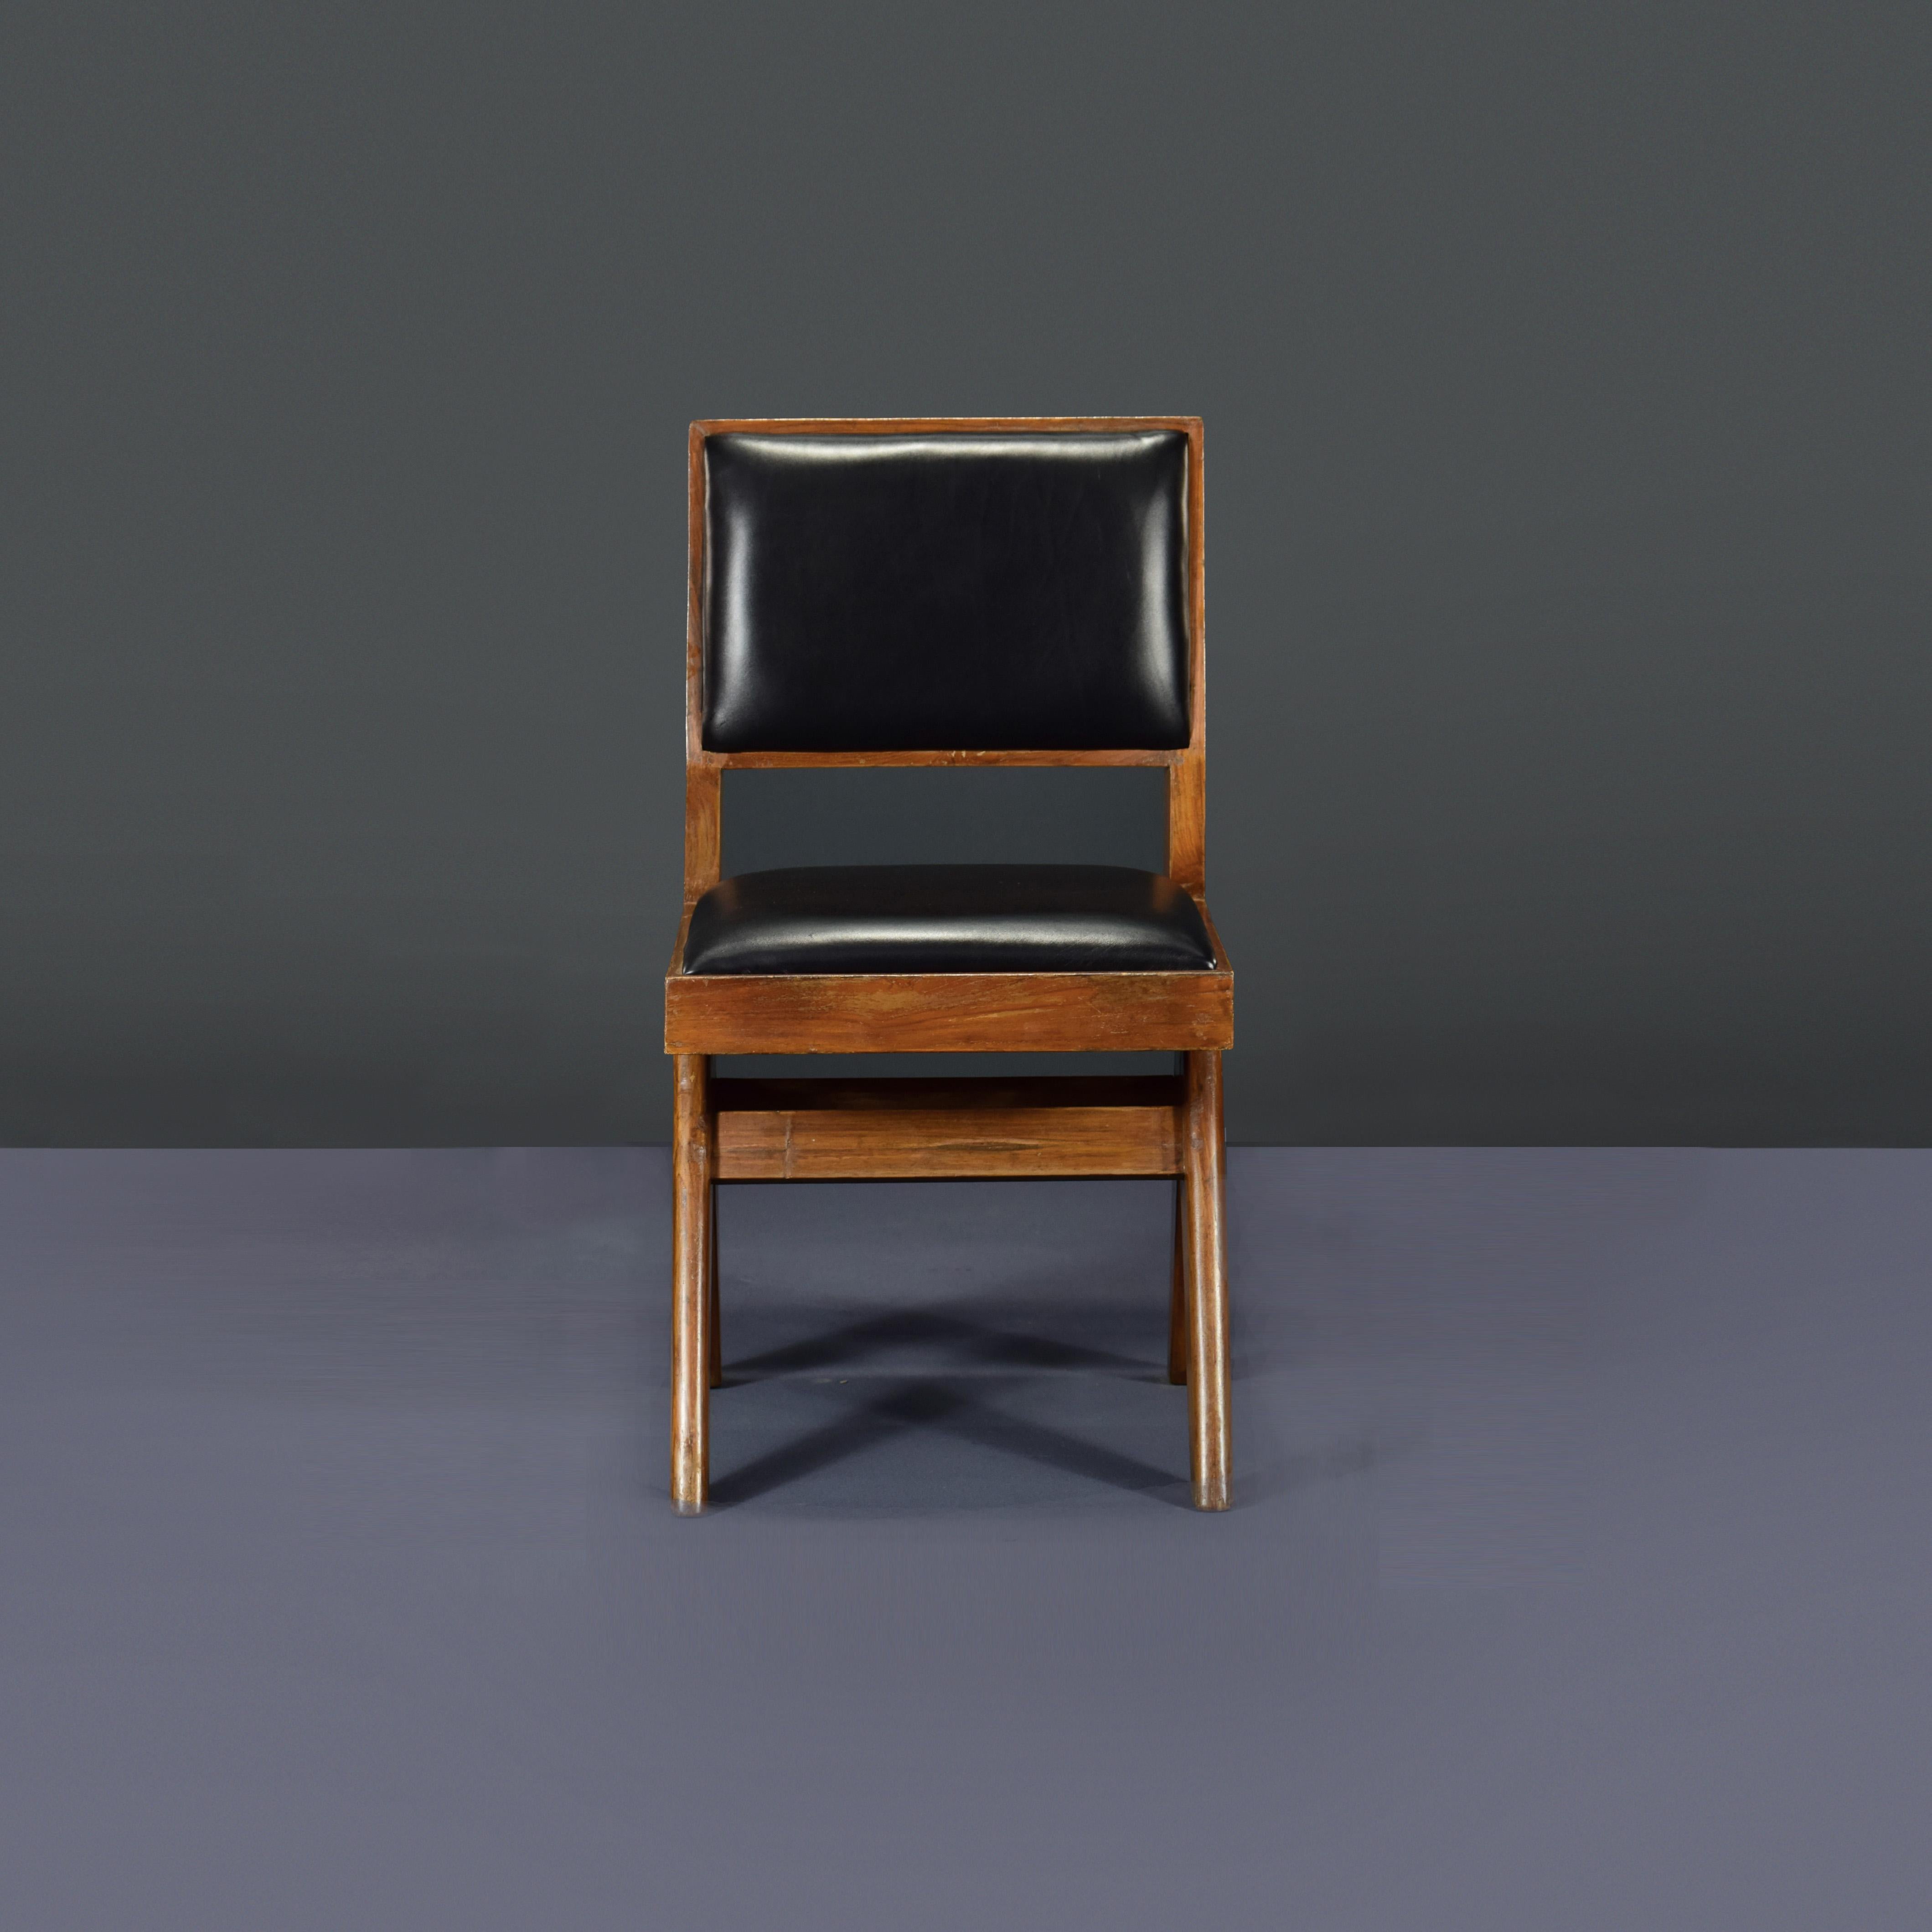 Cette chaise est une très rare chaise d'étudiant avec tapisserie. Enfin, il est iconique. Il semble si simple et pourtant si précis, où les proportions semblent parfaites. Ces jambes en forme de A sont typiques des objets de Chandigarh. Puis ce